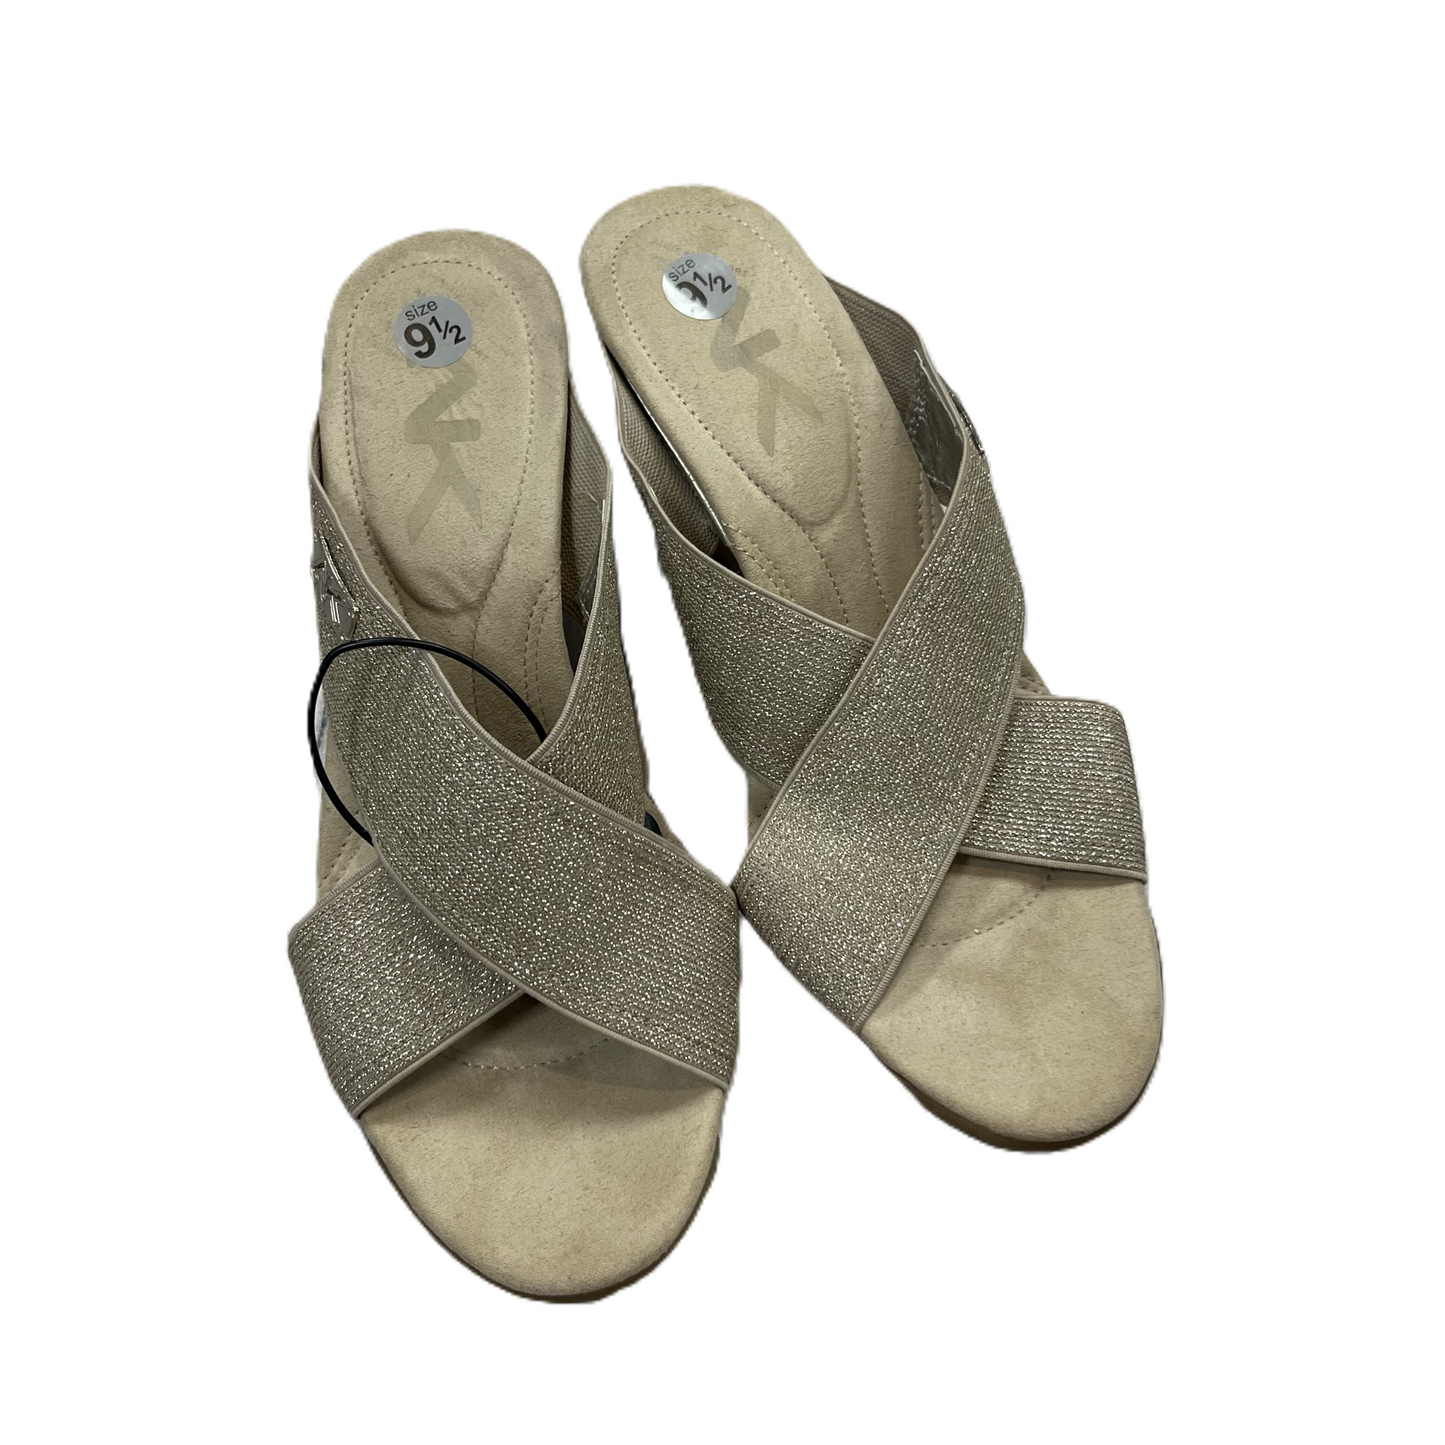 Gold Sandals Heels Wedge By Anne Klein, Size: 9.5